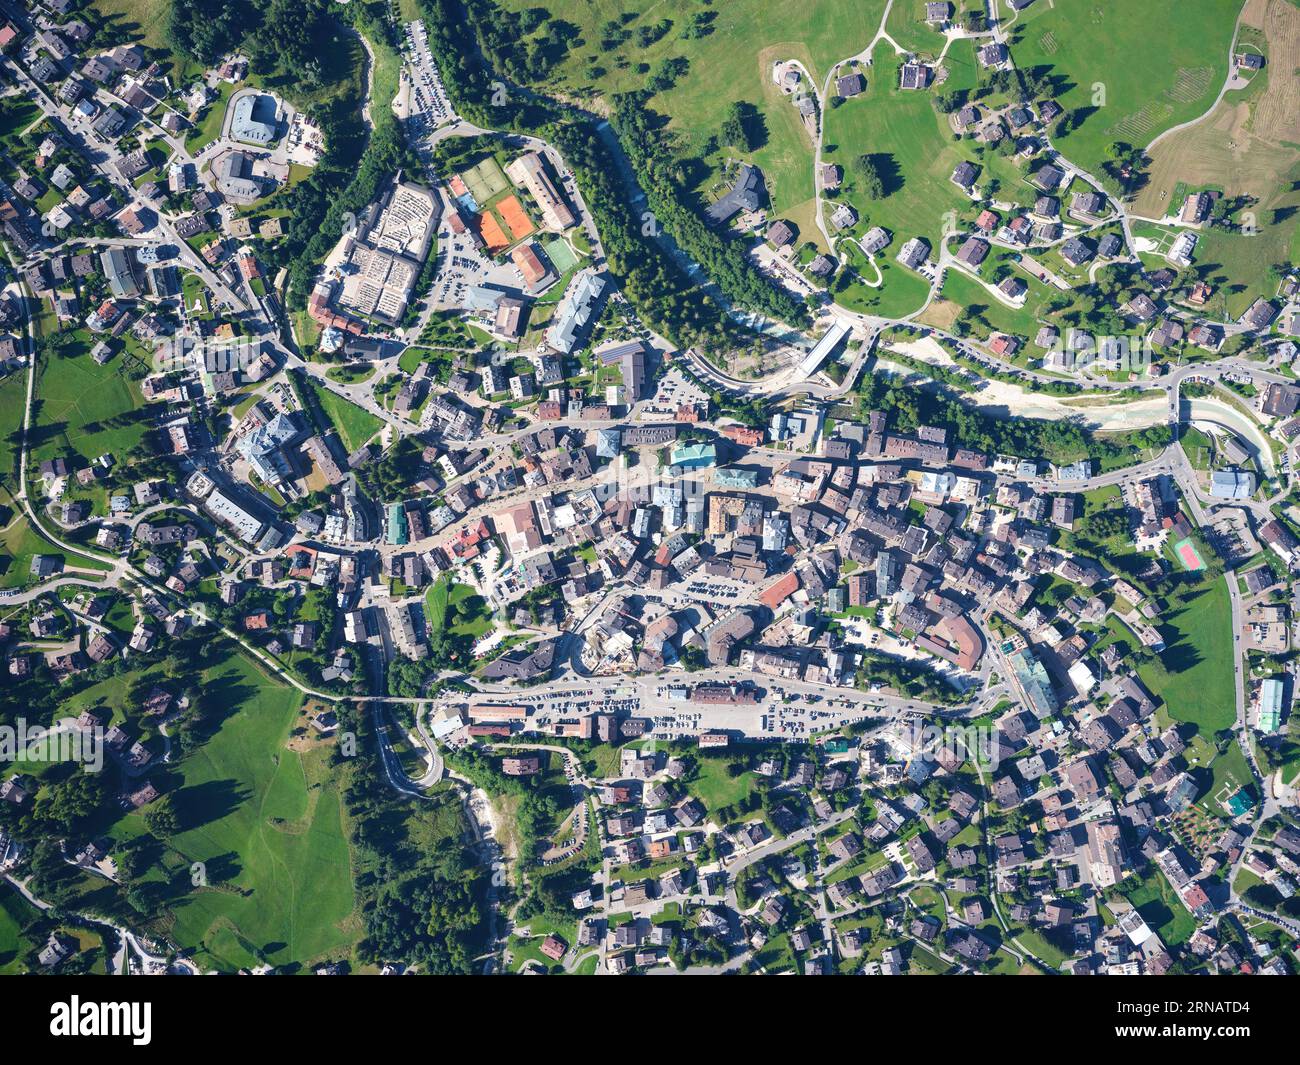 VUE AÉRIENNE VERTICALE. Le centre-ville de Cortina d'Ampezzo sur la rive gauche de la rivière boite. Province of Belluno, Vénétie, Italie. Banque D'Images